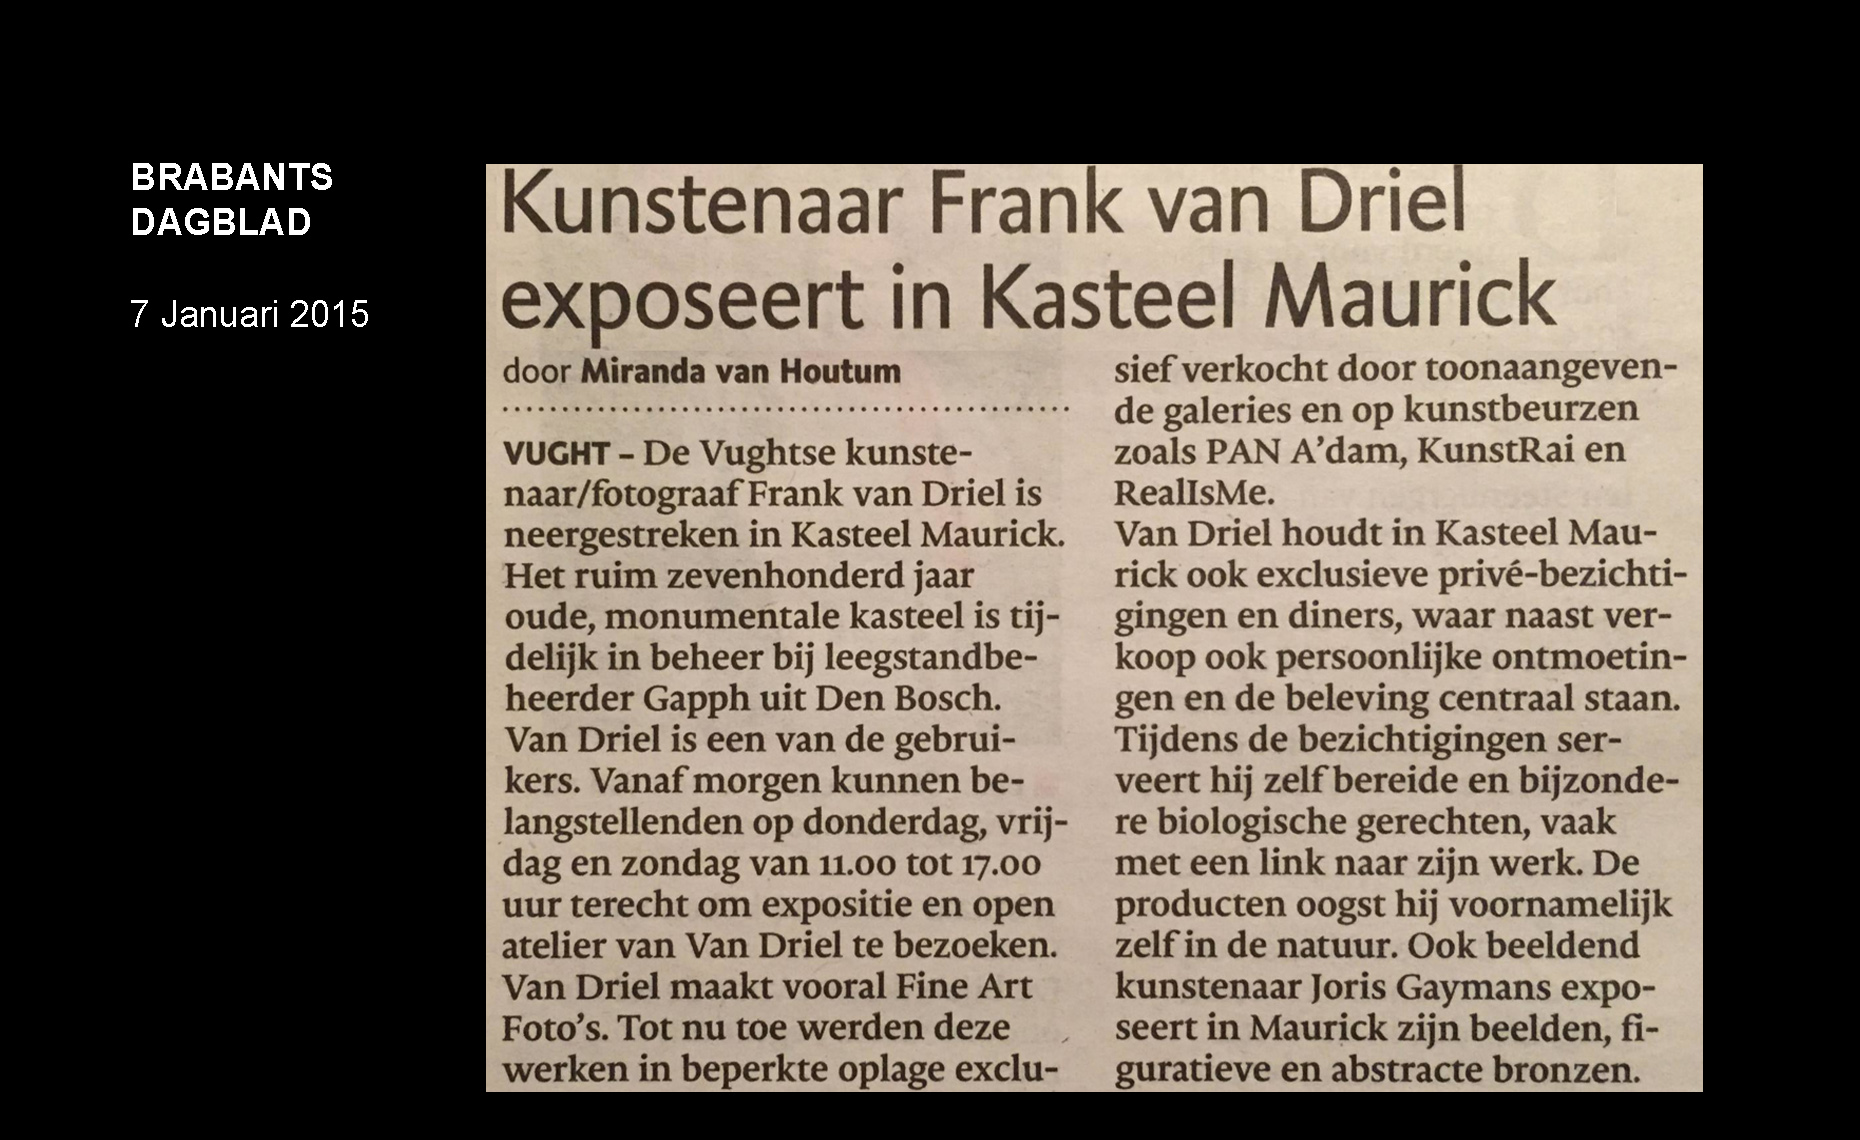 Kunstenaar Frank van Driel exposeert in Kasteel Maurick